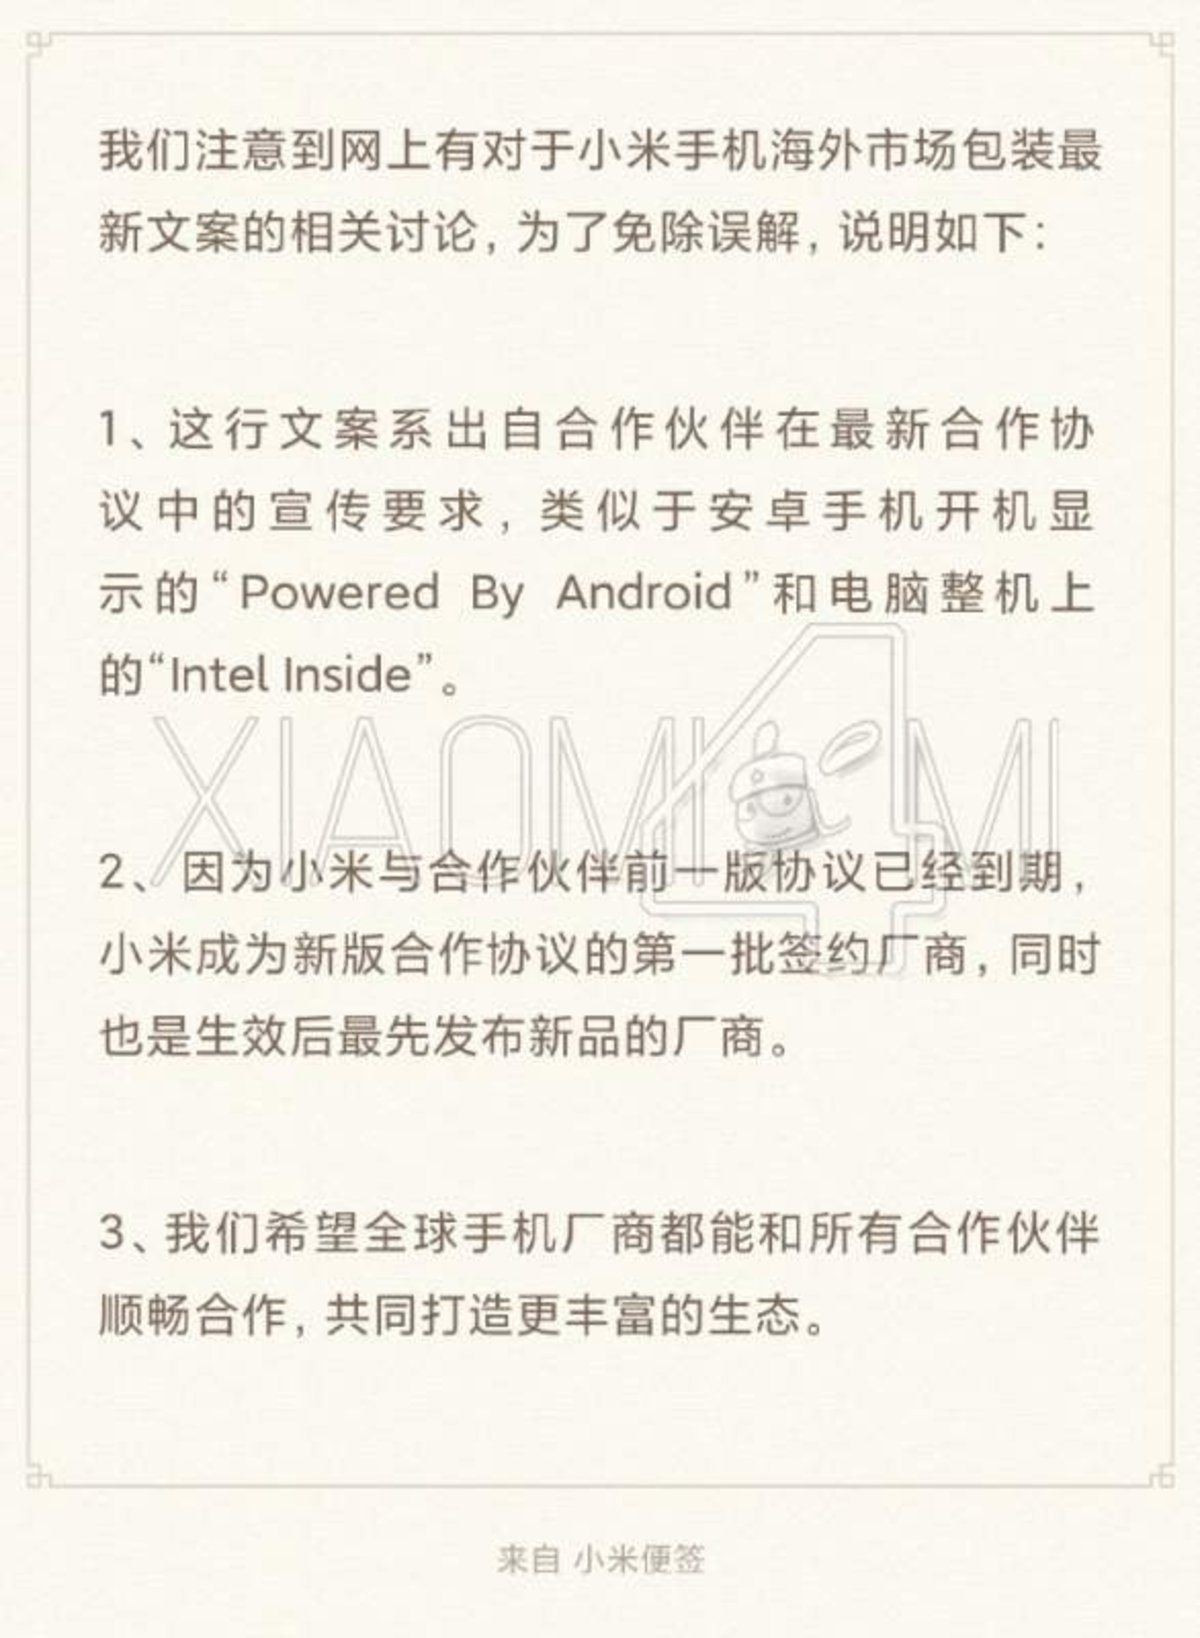 Por qué Xiaomi está poniendo una advertencia en las cajas de sus móviles